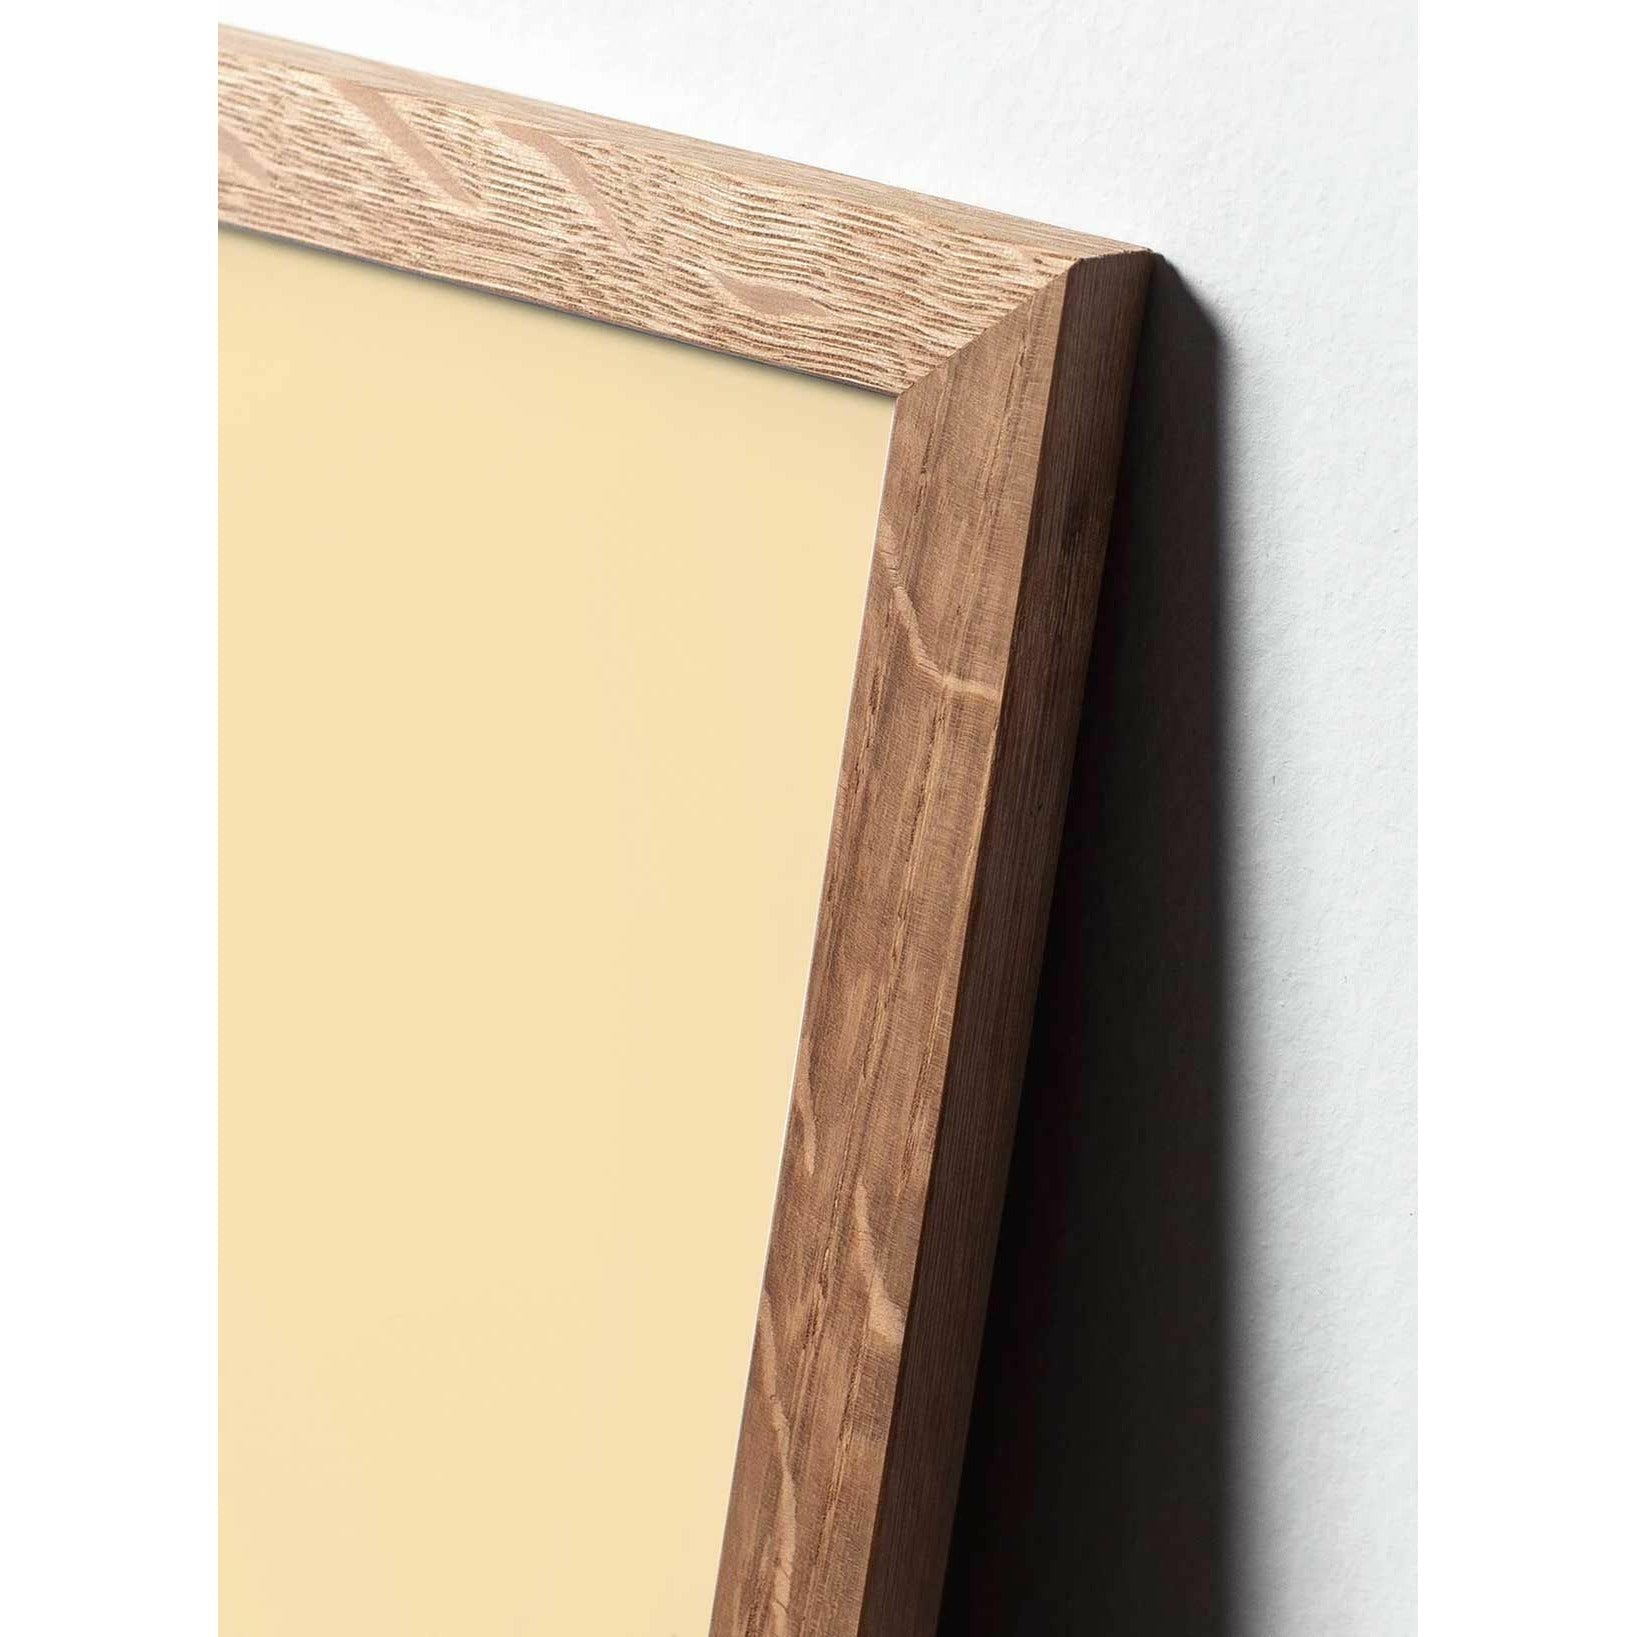 brainchild Affiche Pelikan Classic, cadre en bois clair 50x70 cm, fond noir